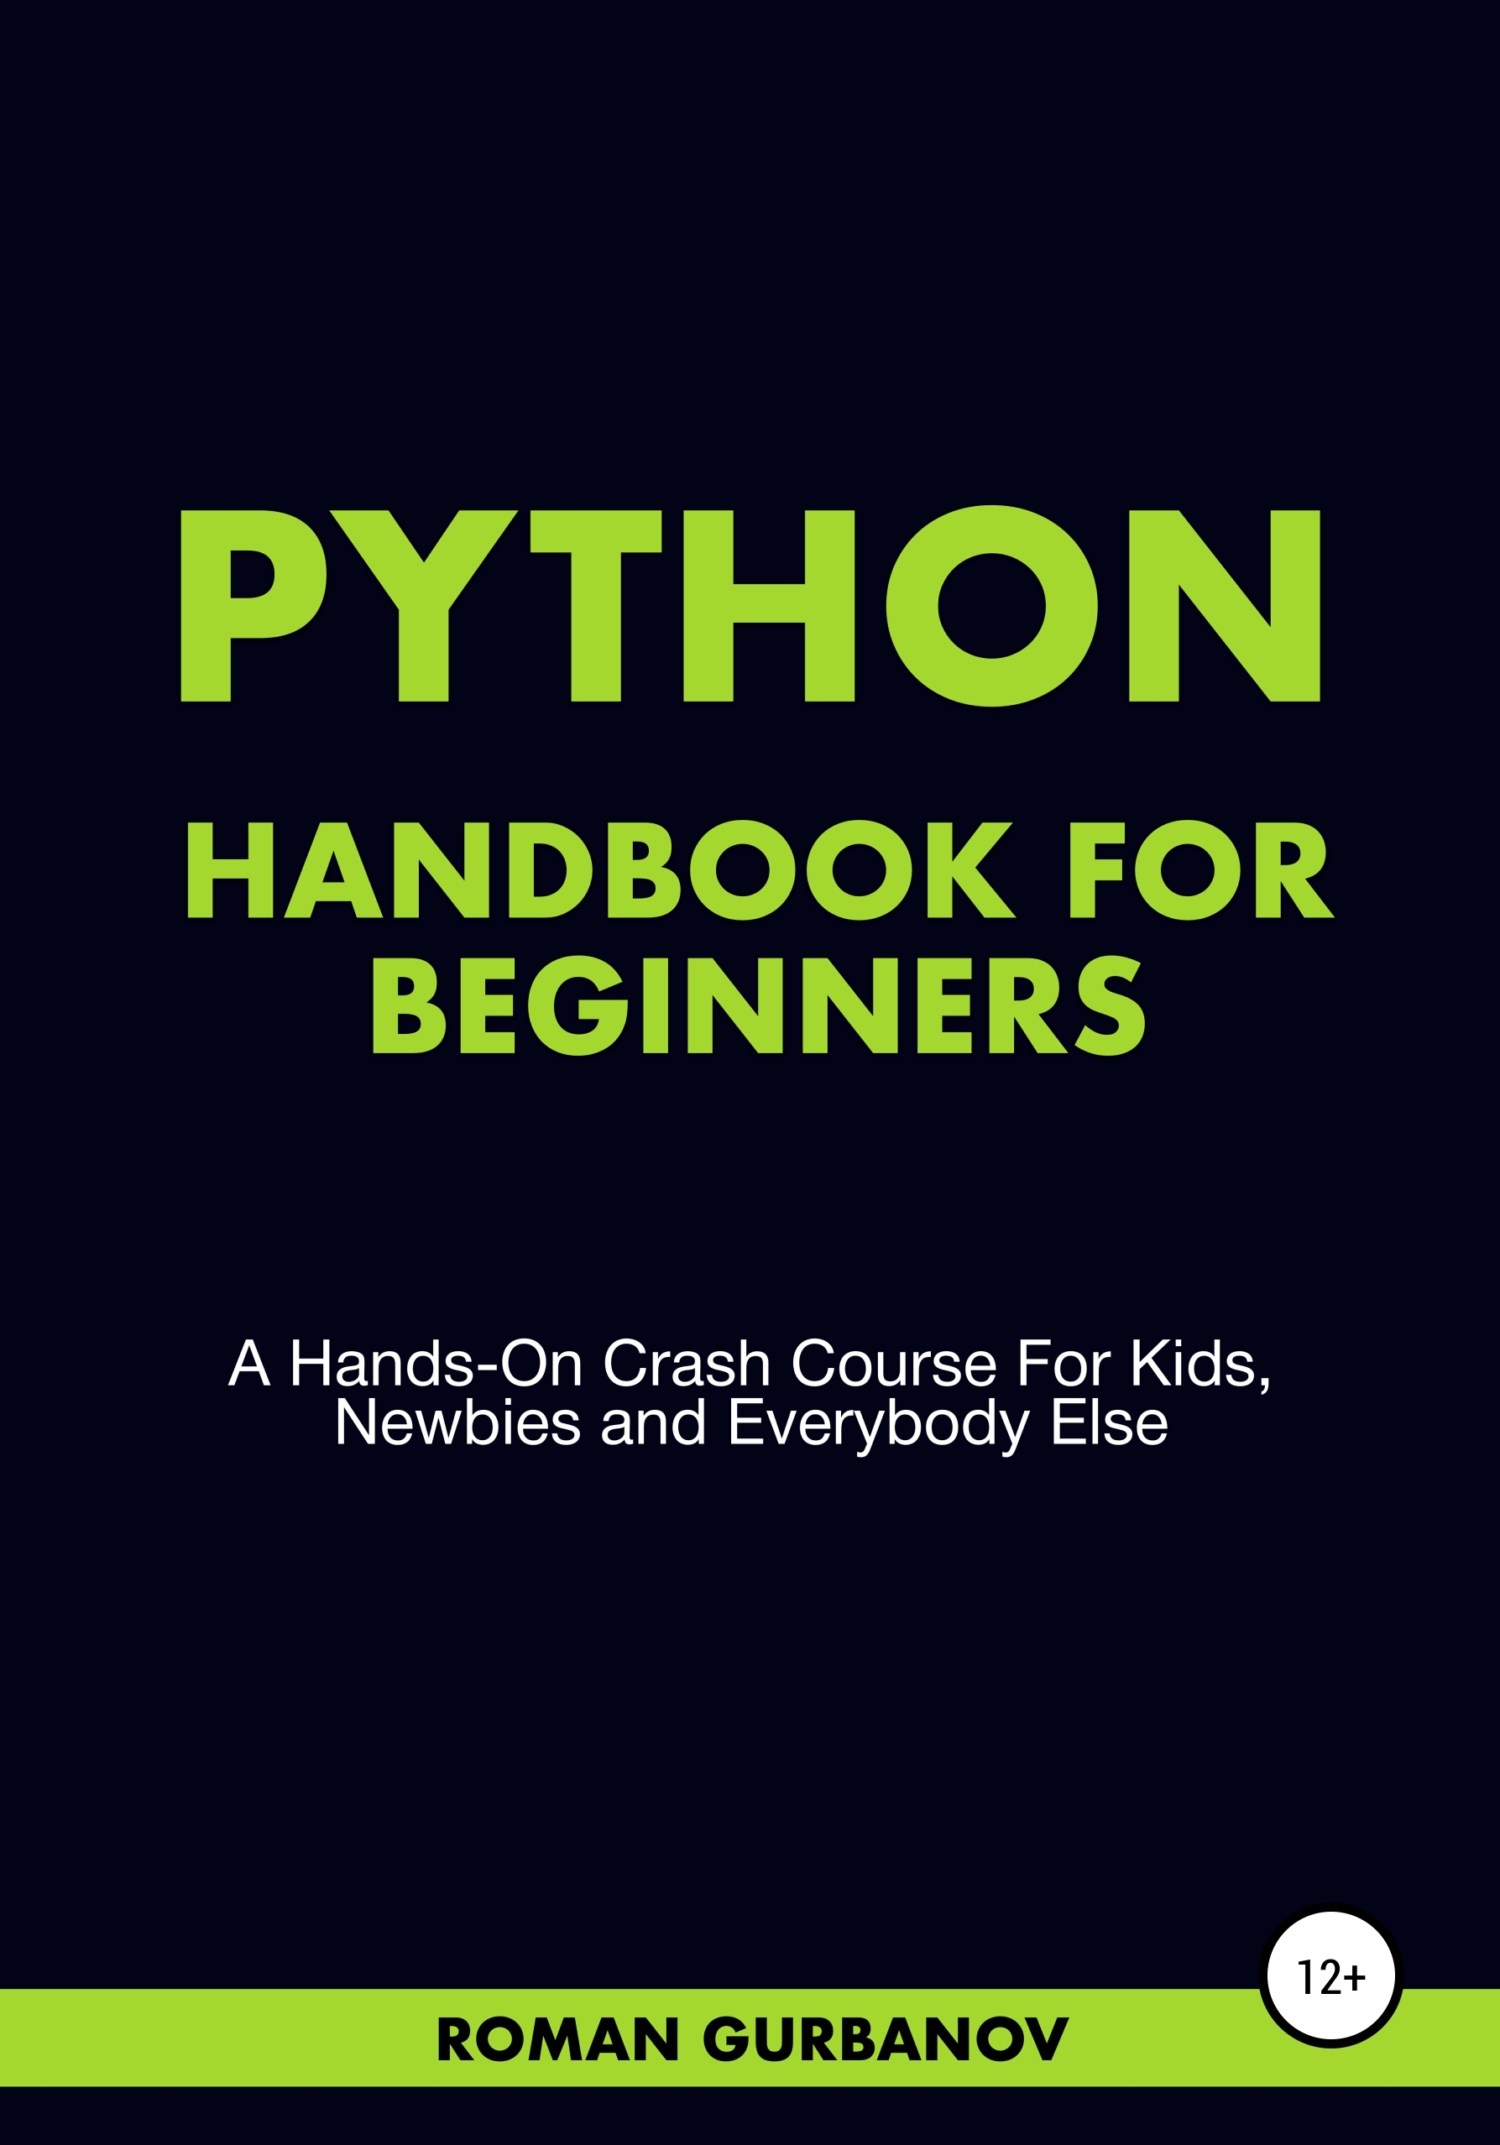 Книга  Python Handbook For Beginners созданная Roman Gurbanov может относится к жанру информатика и вычислительная техника, программирование. Стоимость электронной книги Python Handbook For Beginners с идентификатором 65147951 составляет 99.90 руб.